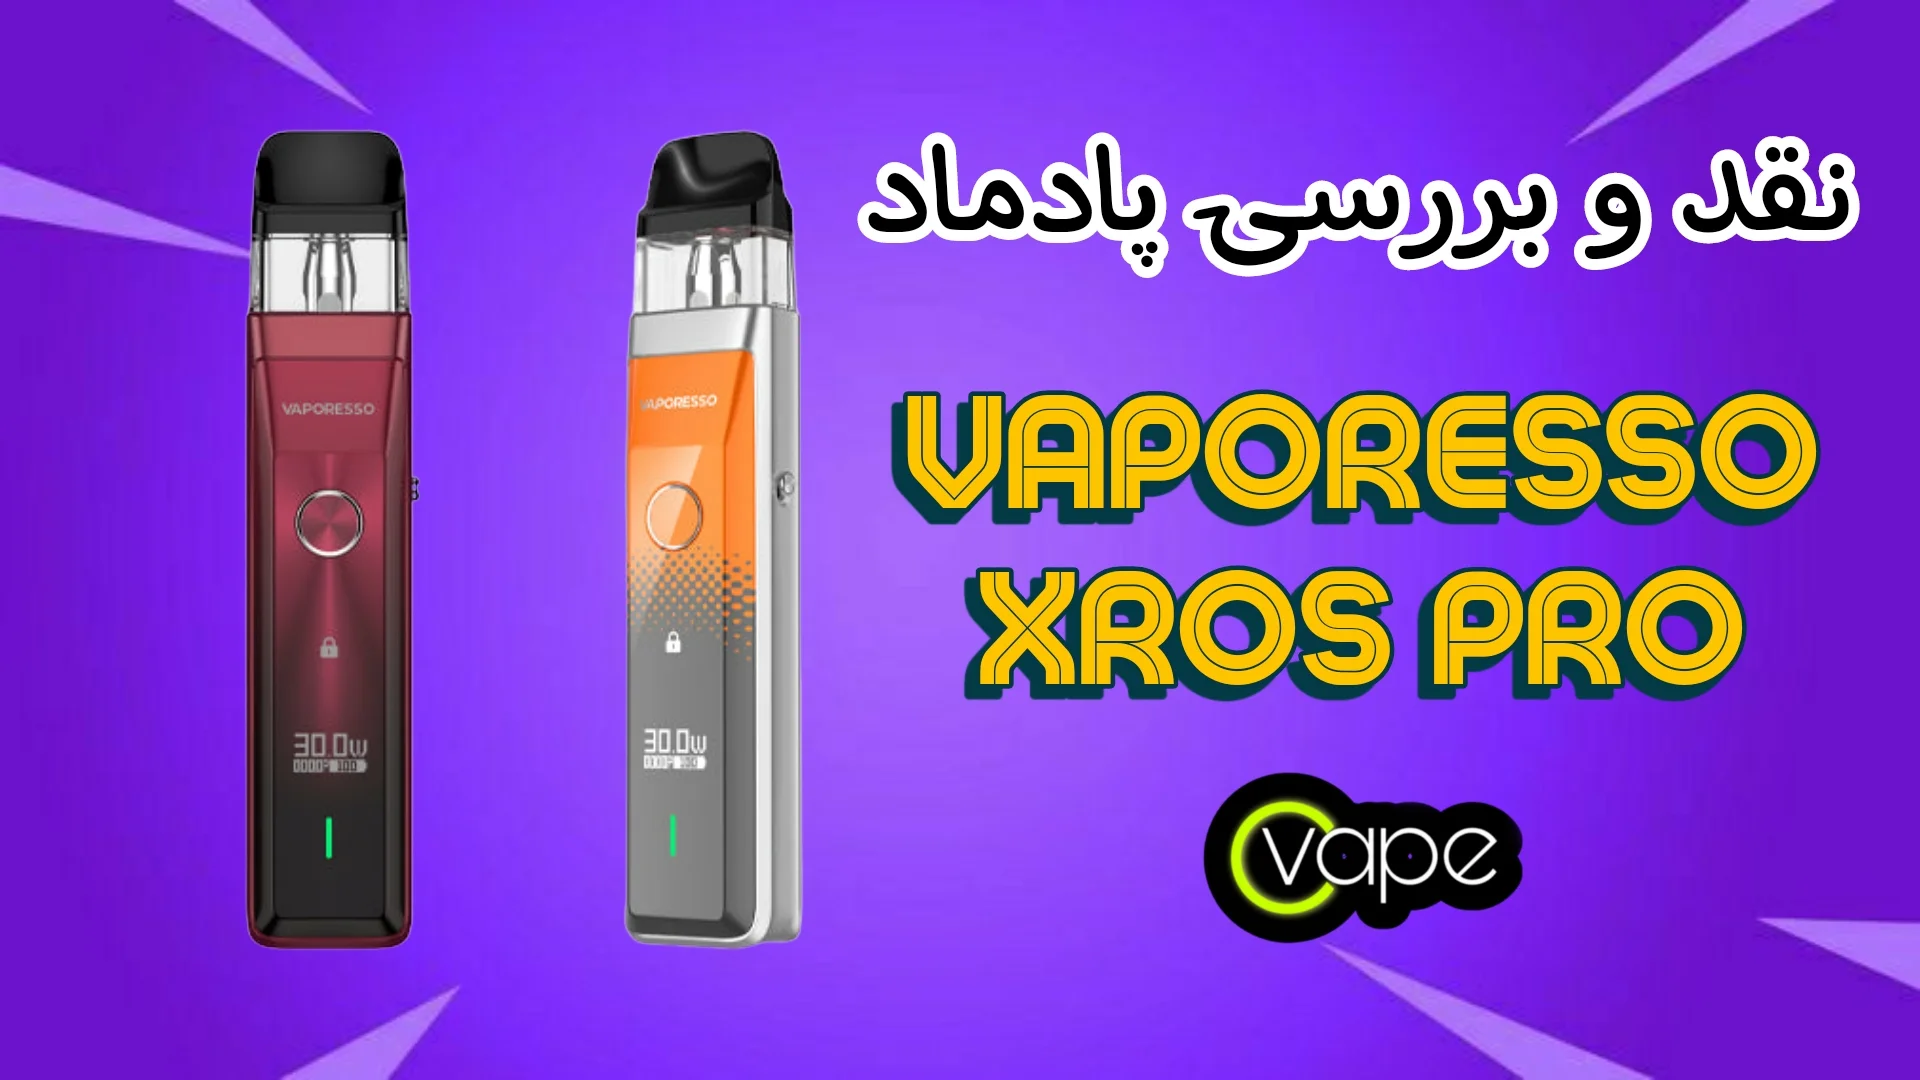 ویپرسو اکسراس پرو Vaporesso Xros Pro نقد و برر سی